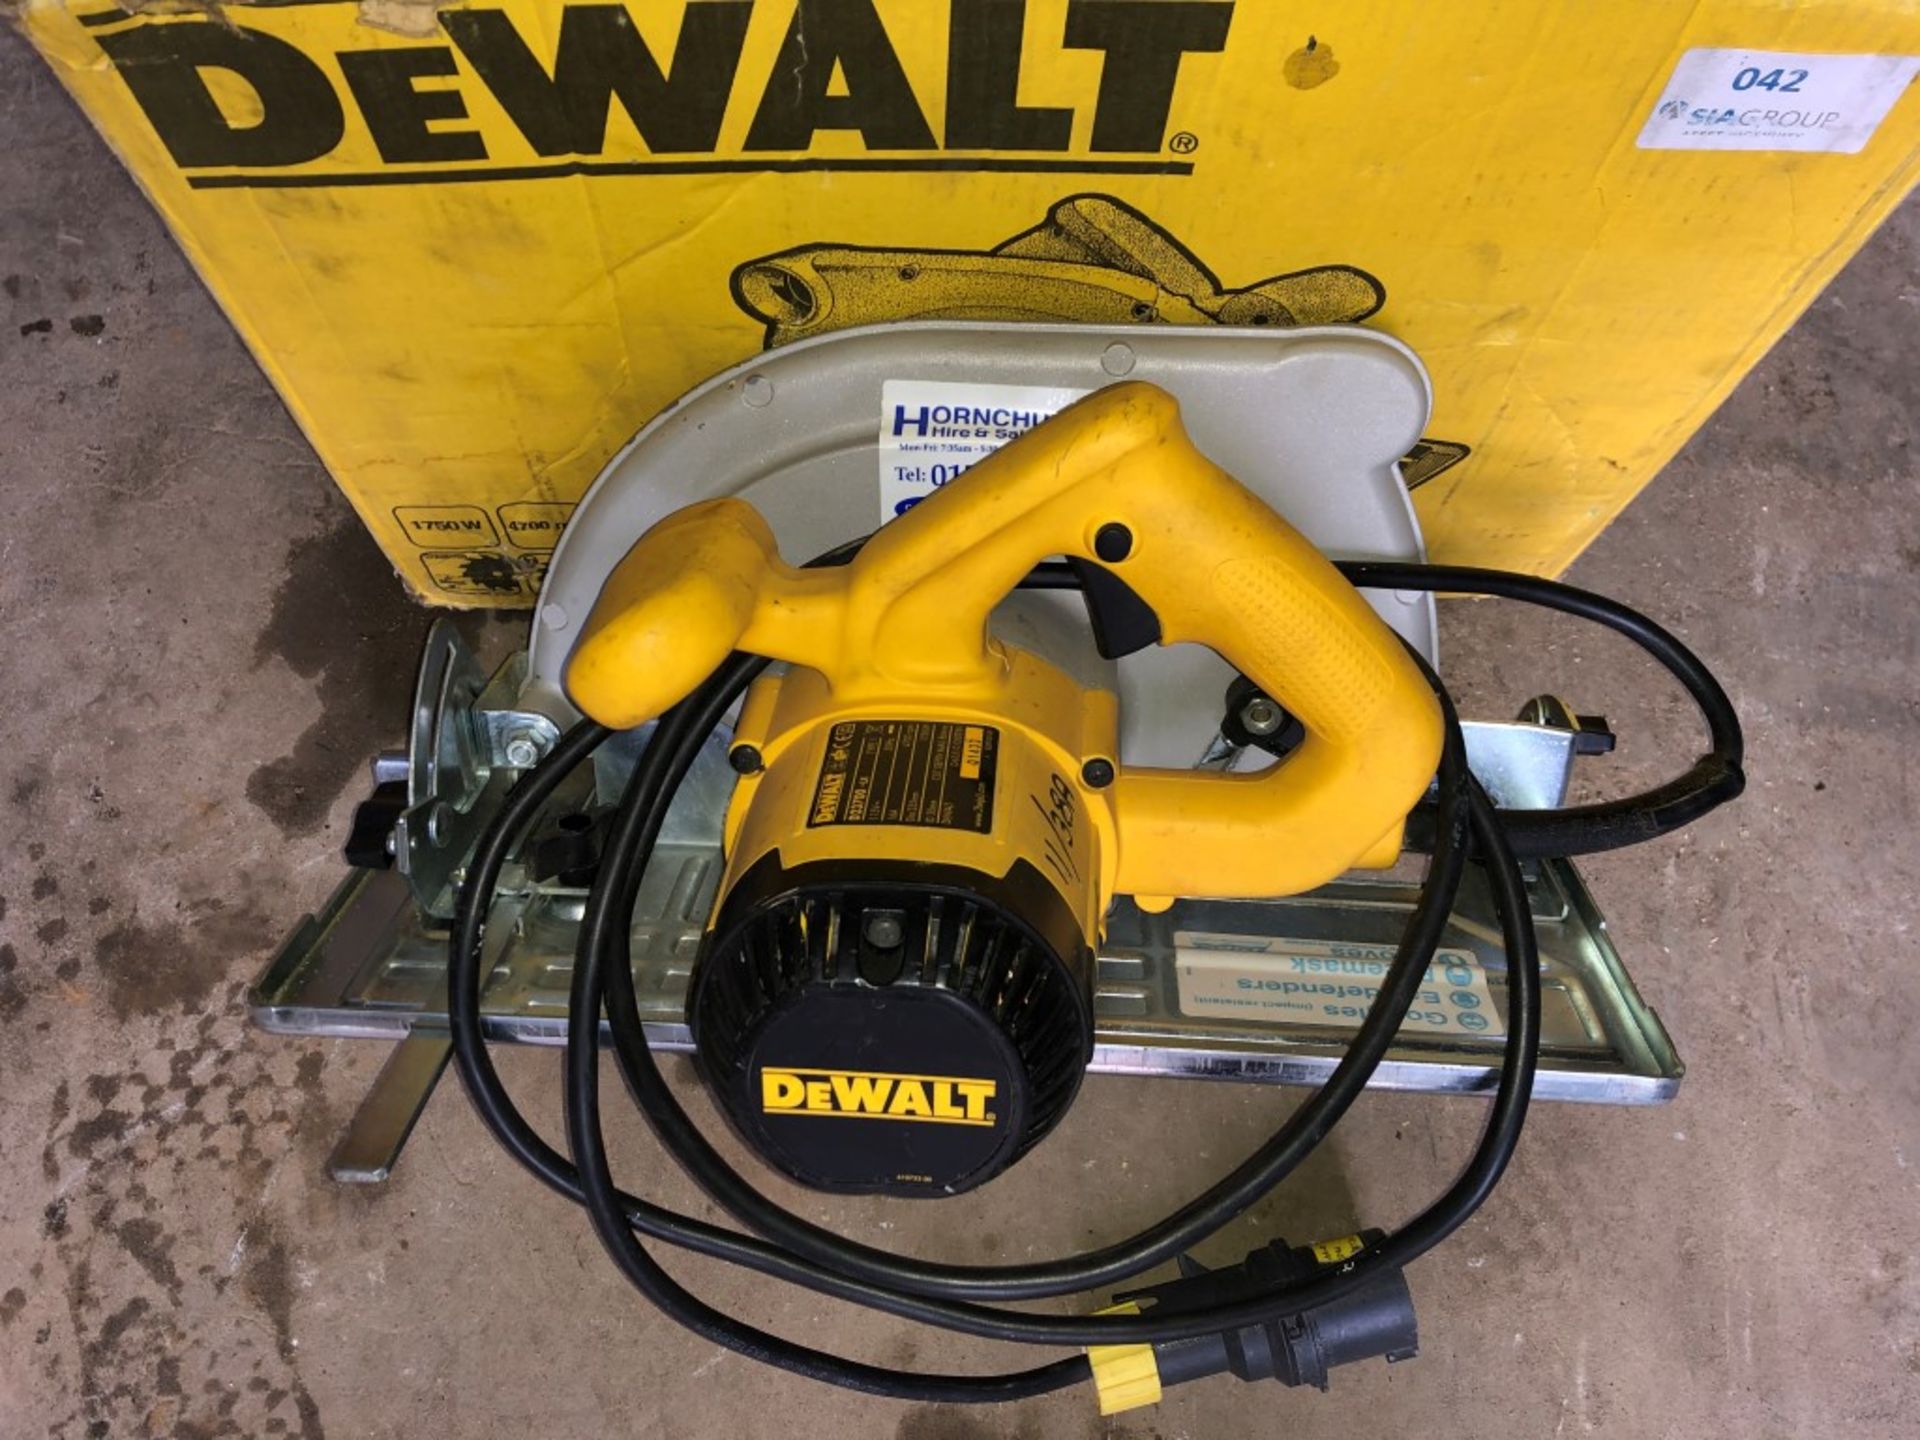 DeWalt D23700 1750W 235mm circular saw - Image 2 of 3